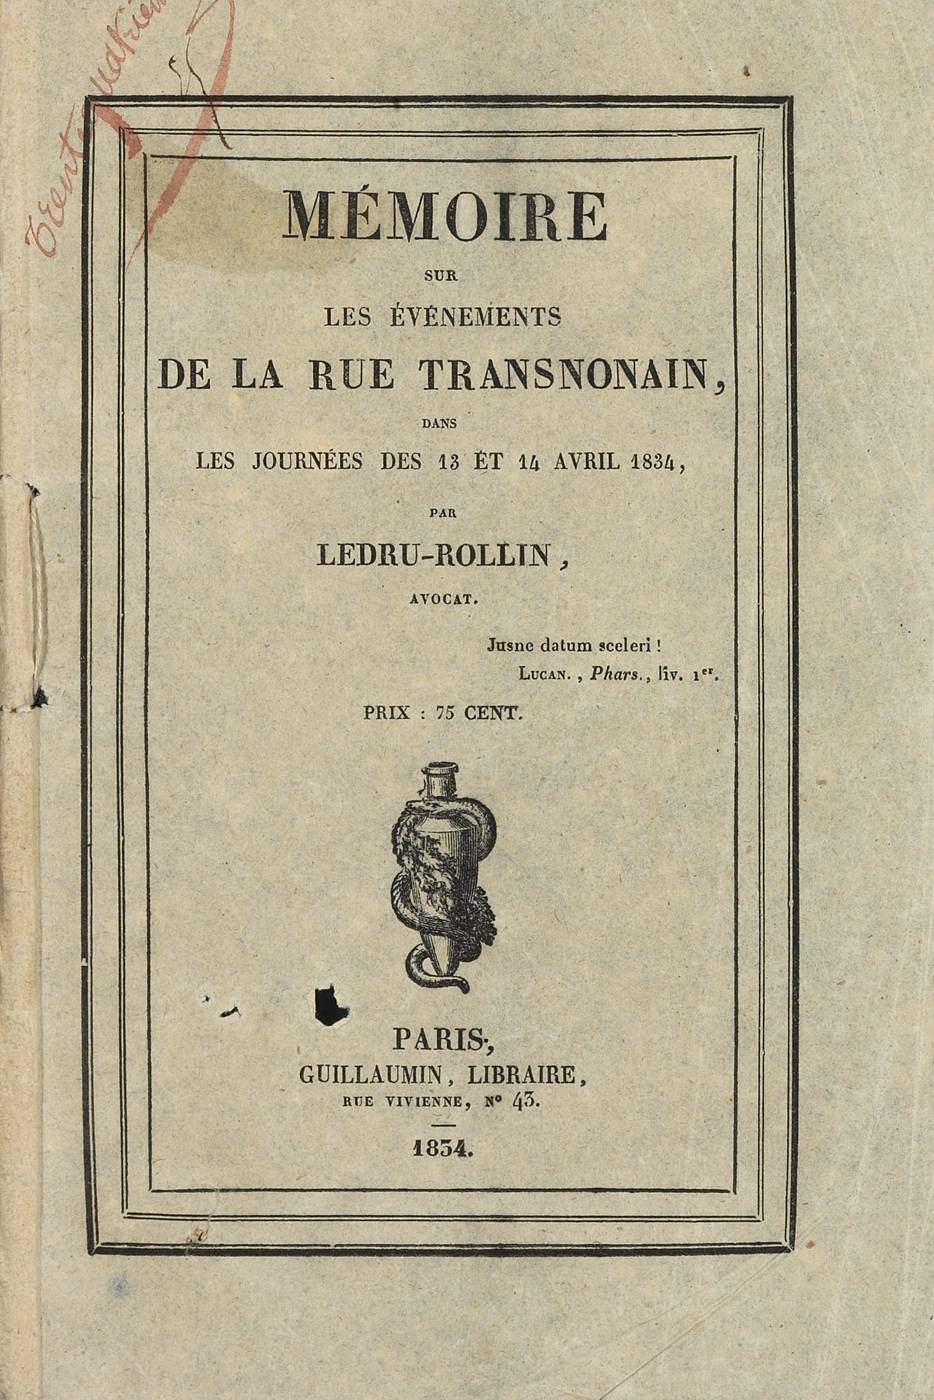 Mémoire sur les événements de la rue Transnonain, par Ledru-Rollin.